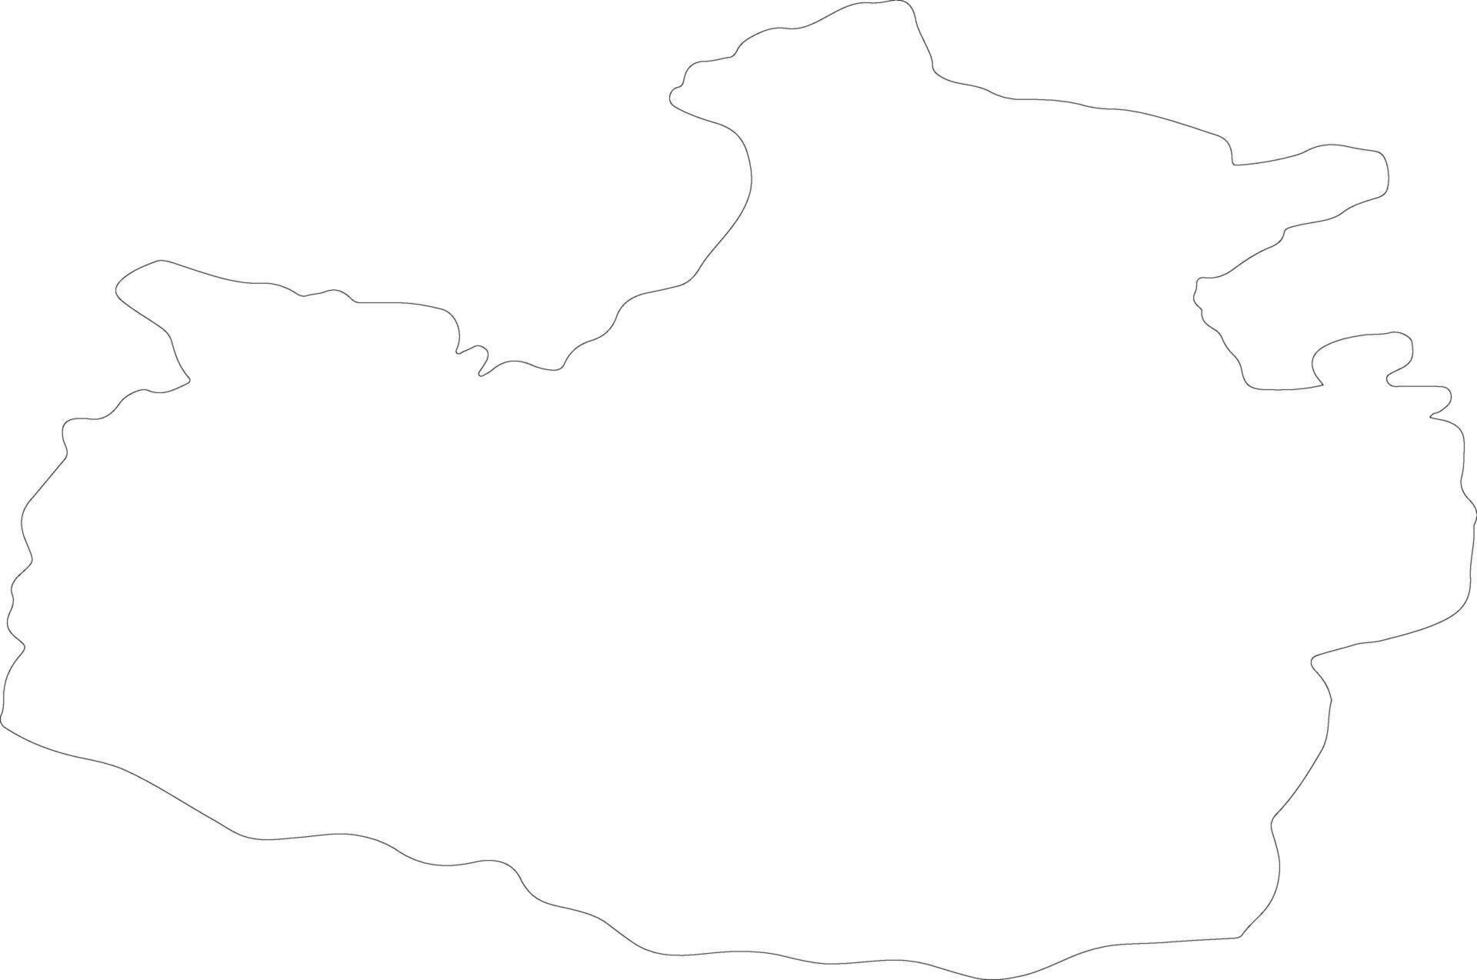 karachay-cherkess Rusland schets kaart vector